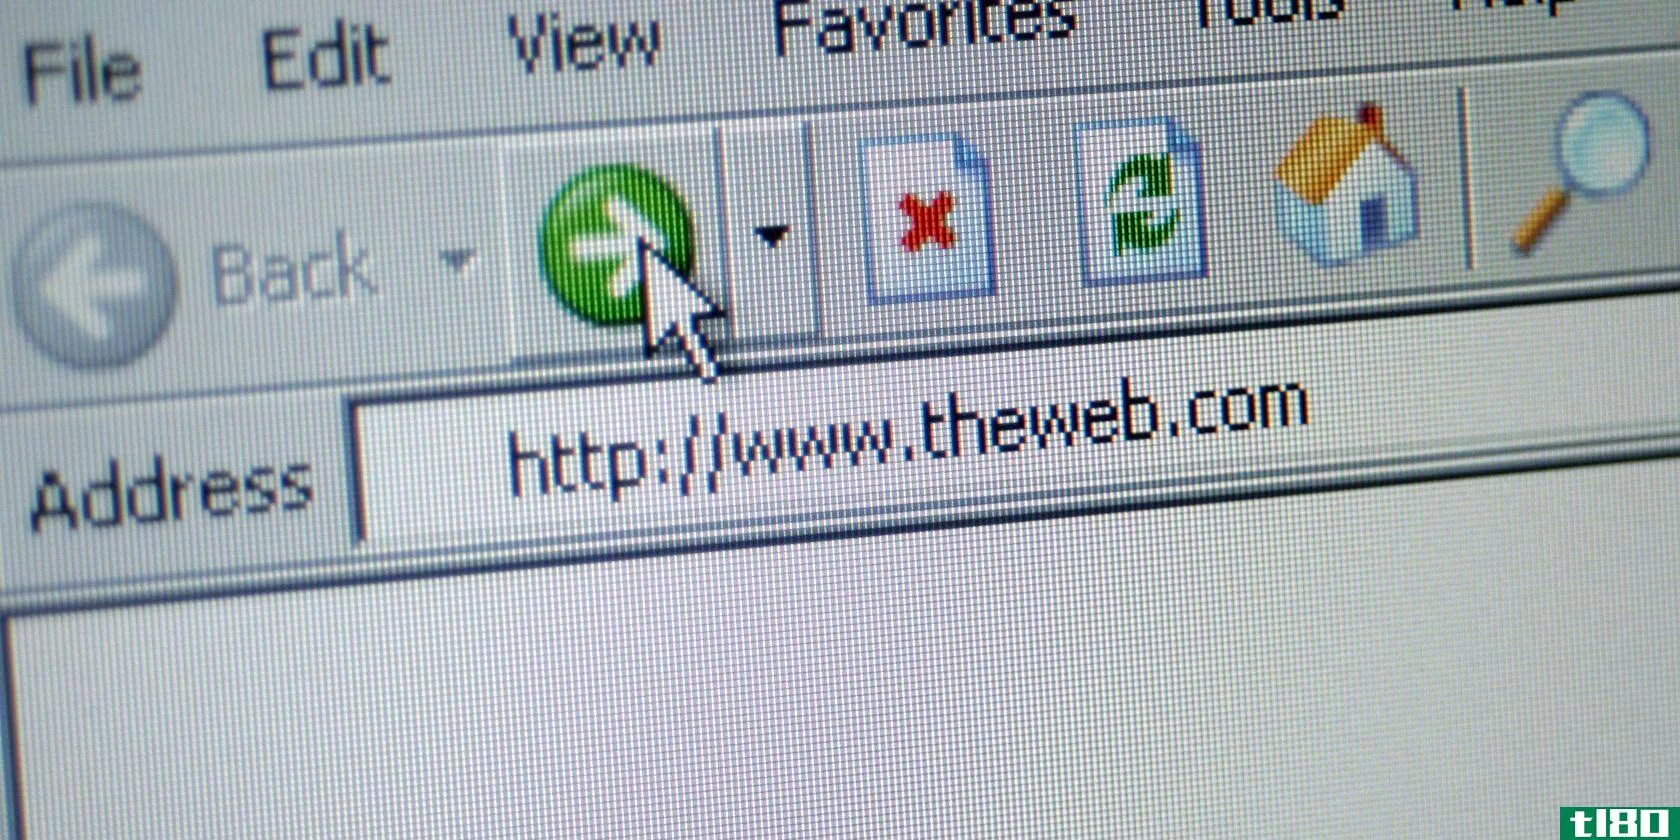 An address bar in Internet Explorer